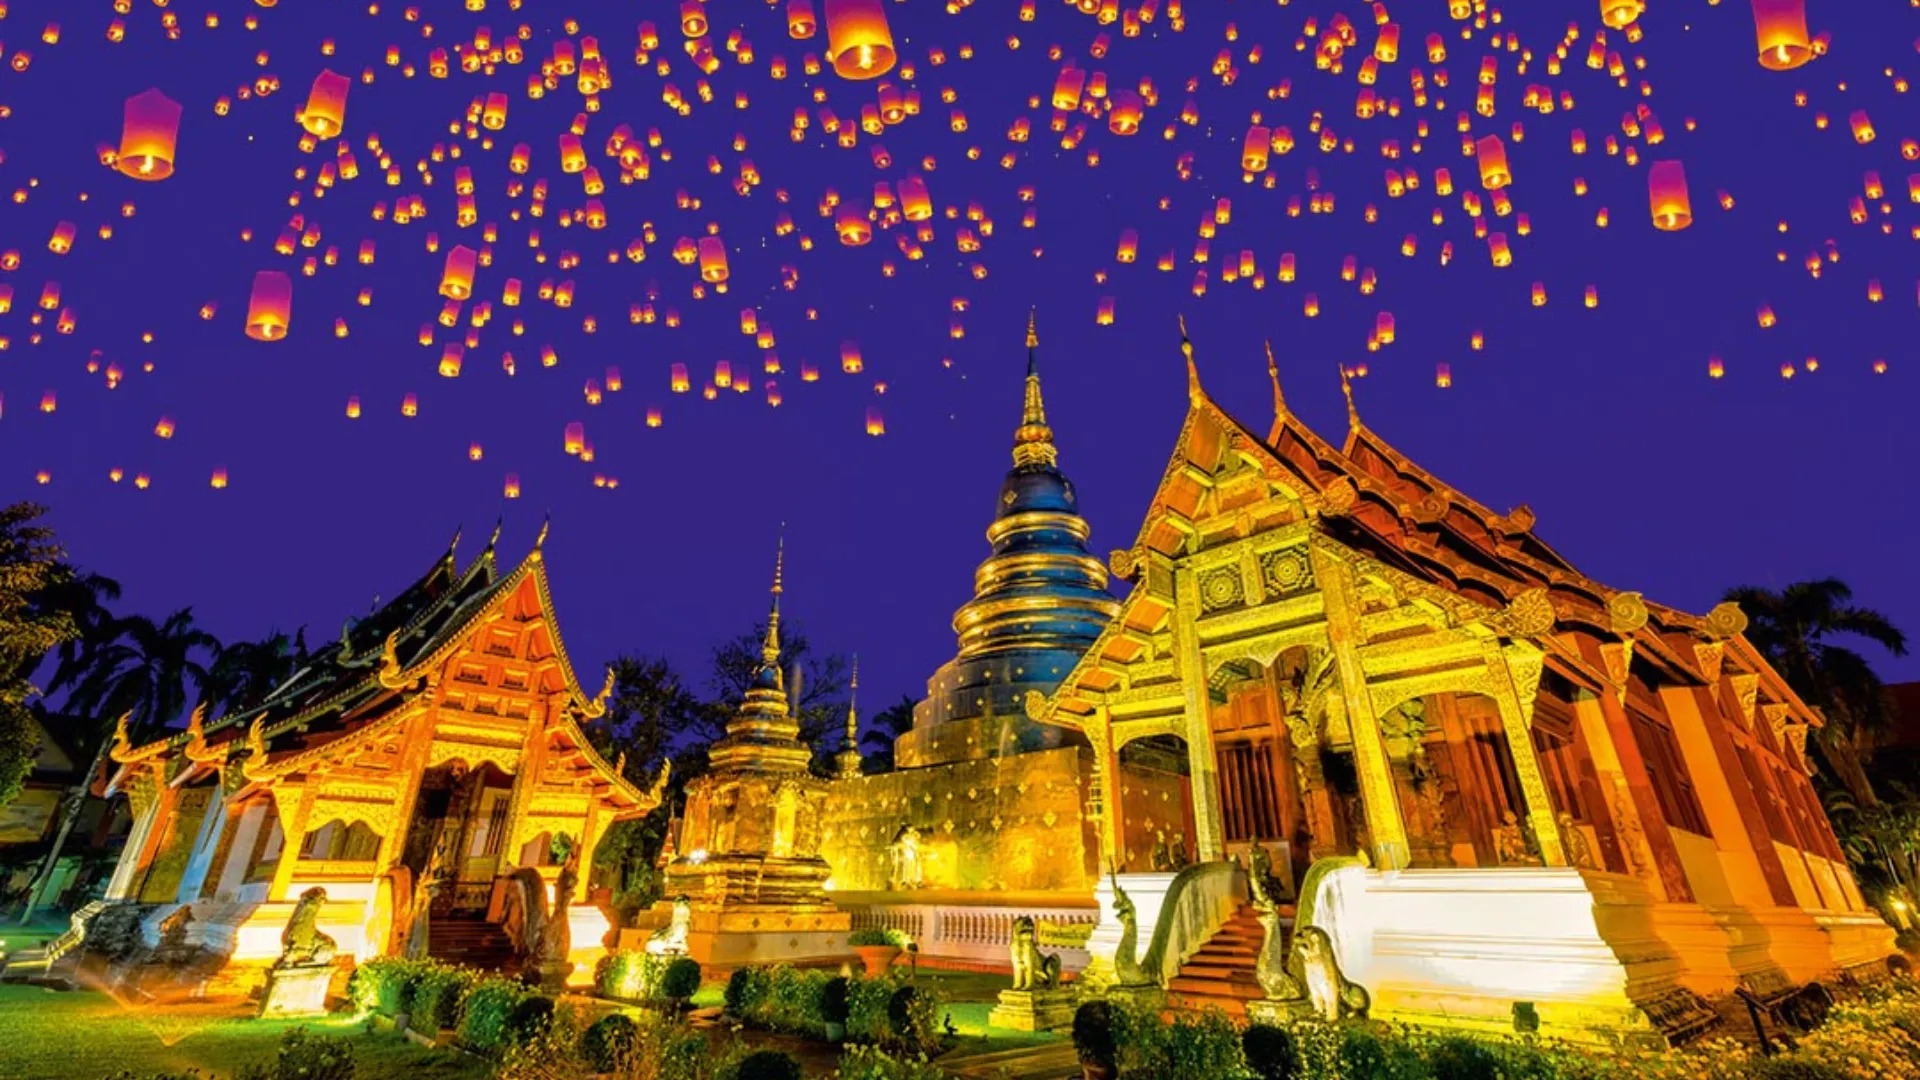 Lễ hội đèn lồng tuyệt đẹp không thể bỏ lỡ tại Chiang Mai - 1